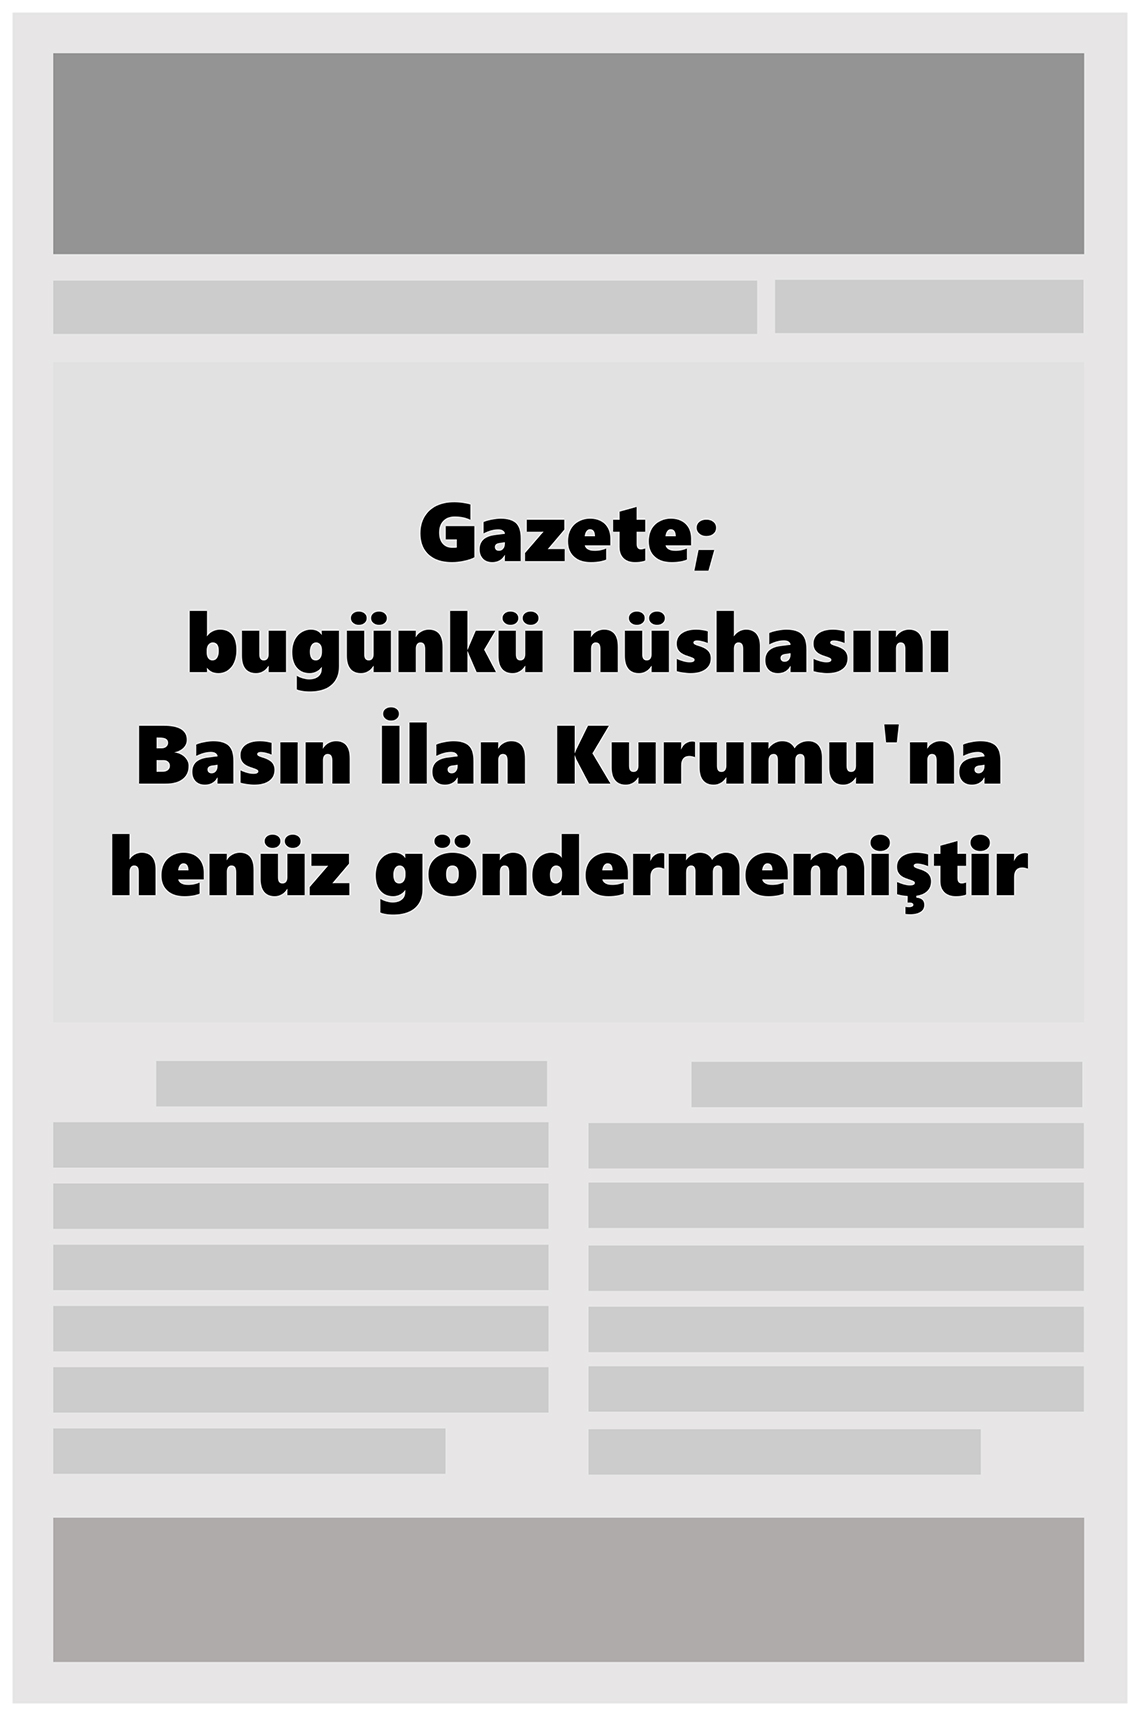 29 Ocak 2023 Büyükşehir Merhaba GAzetesi Gazete Manşeti